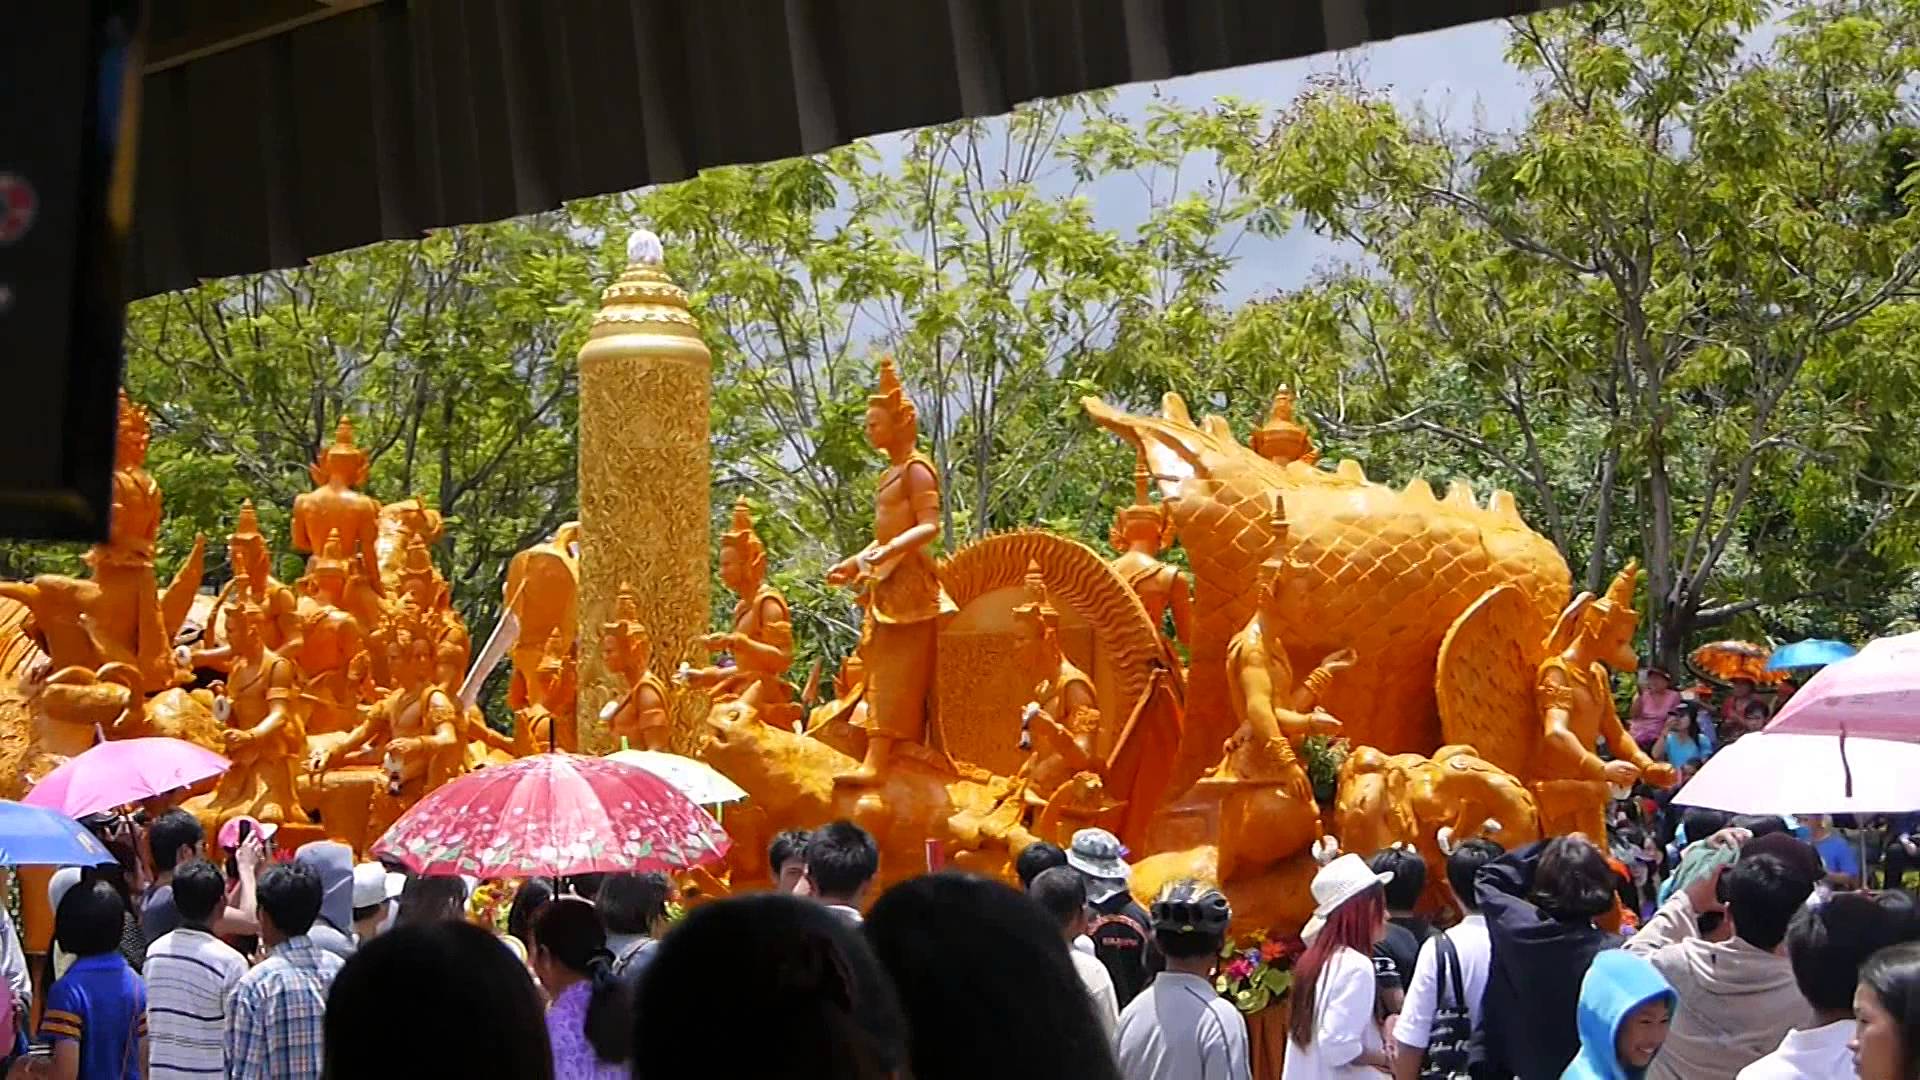 Ubon Ratchathani Candle Festival 2014. Part 5 of 5. - YouTube